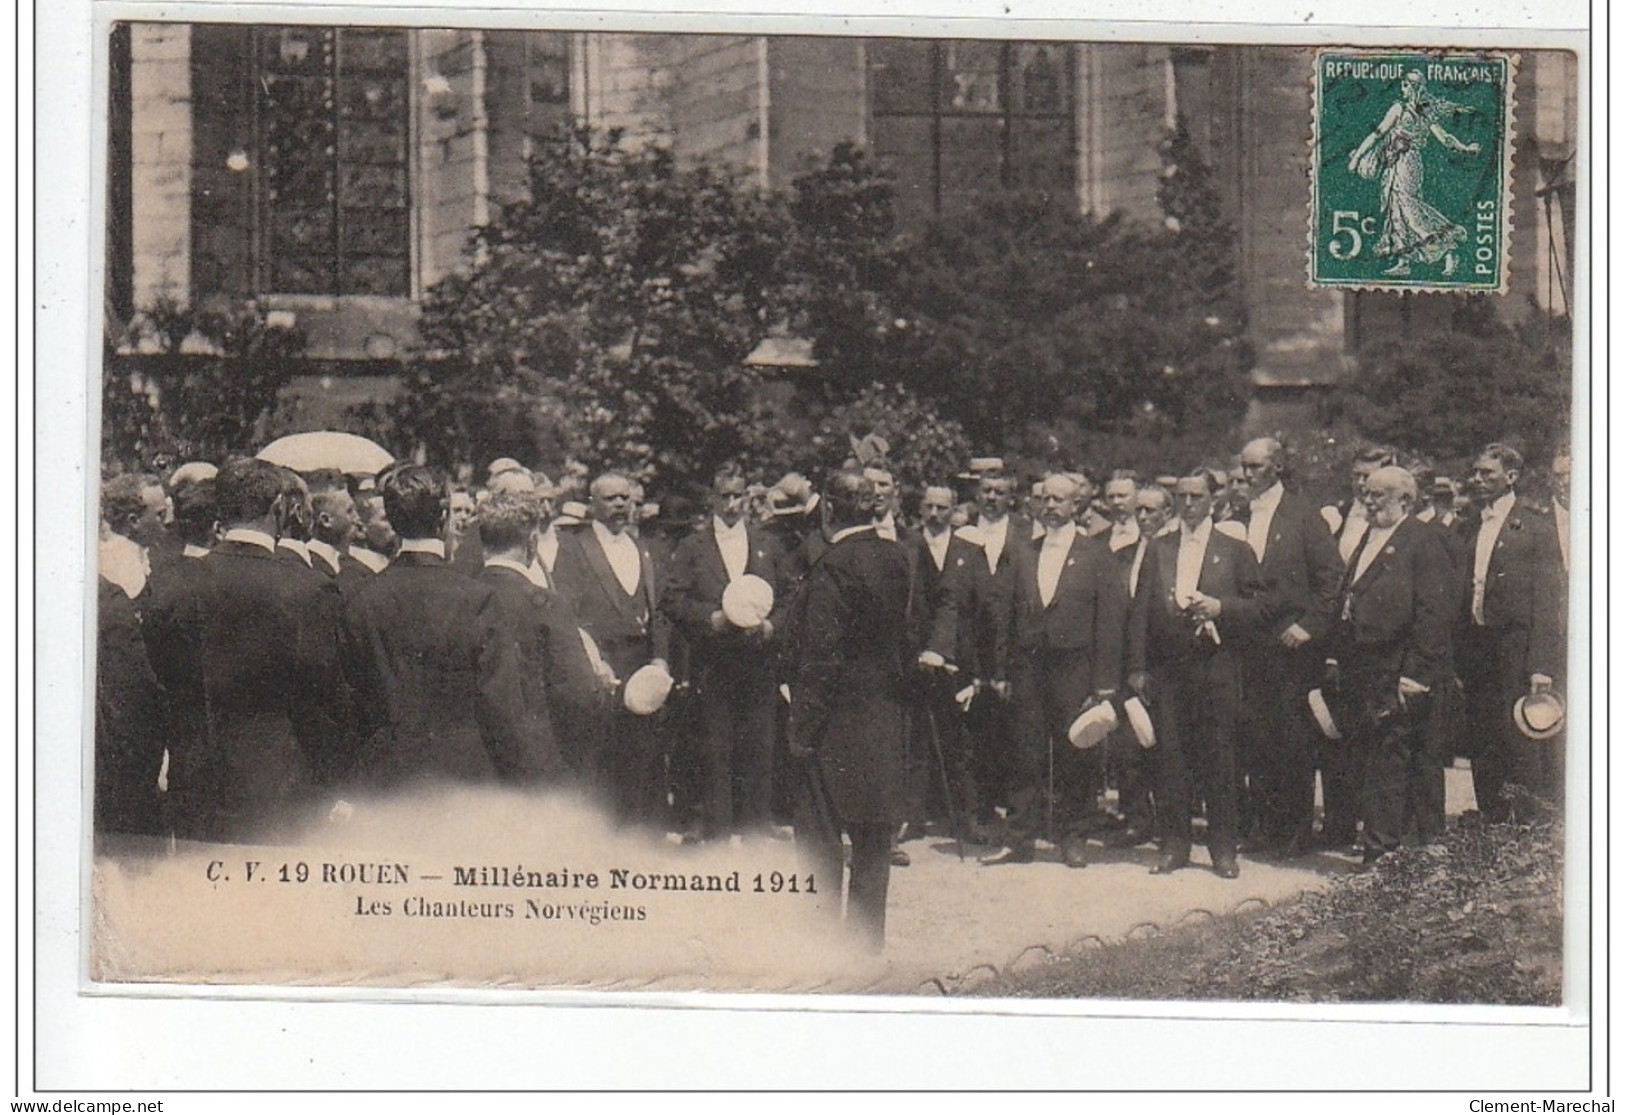 ROUEN - Millénaire Normand 1911 - Les Chanteurs Norvégiens - Très Bon état - Rouen